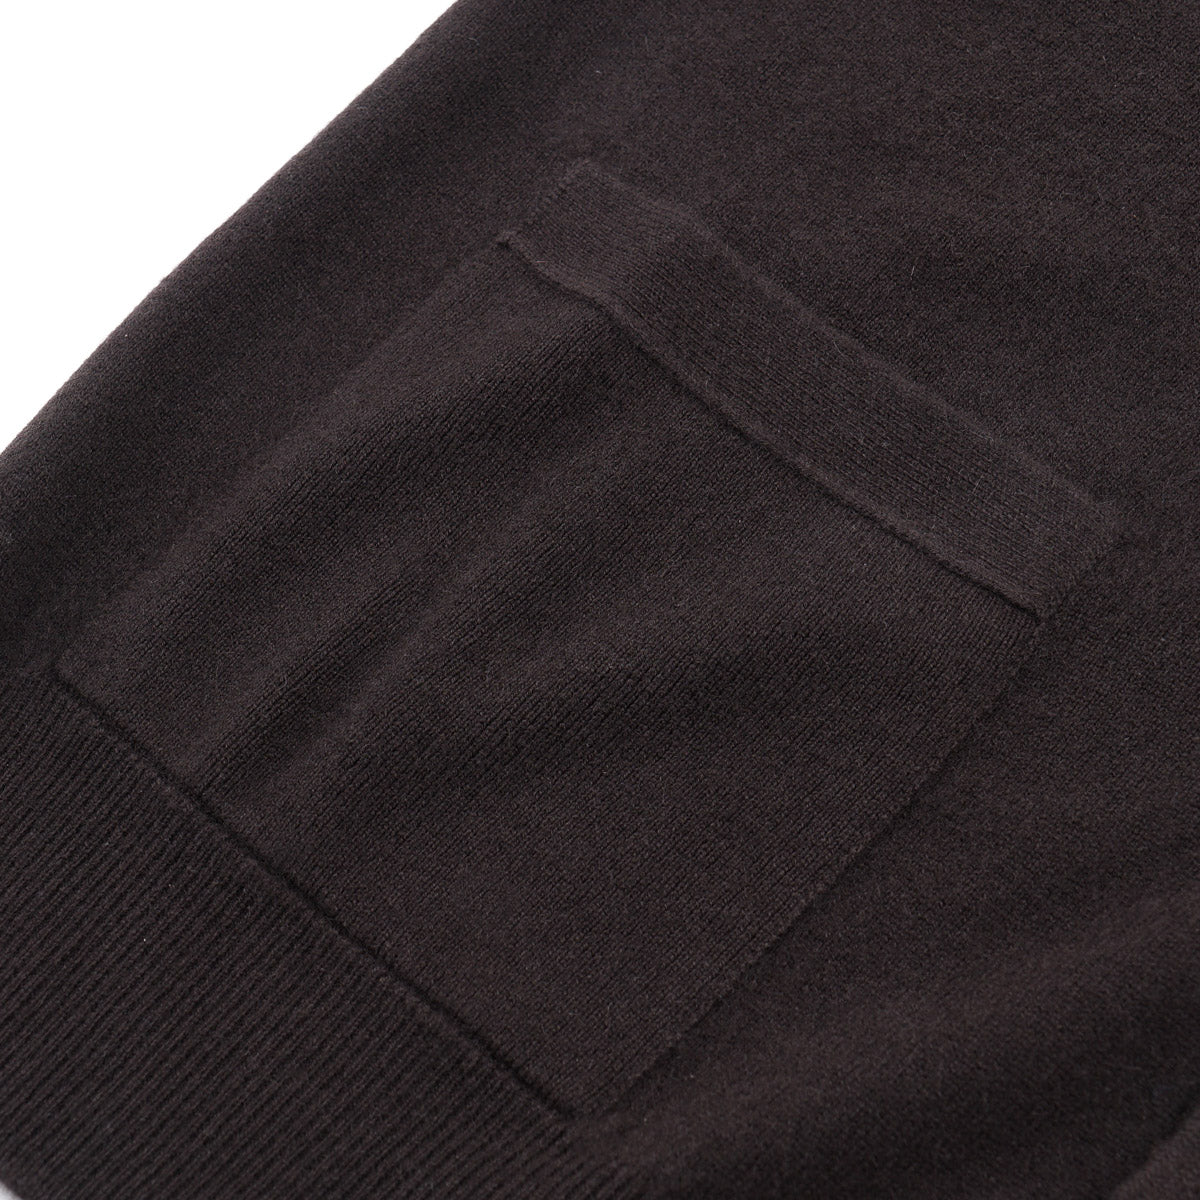 Cruciani Cashmere Cardigan Sweater Vest - Top Shelf Apparel